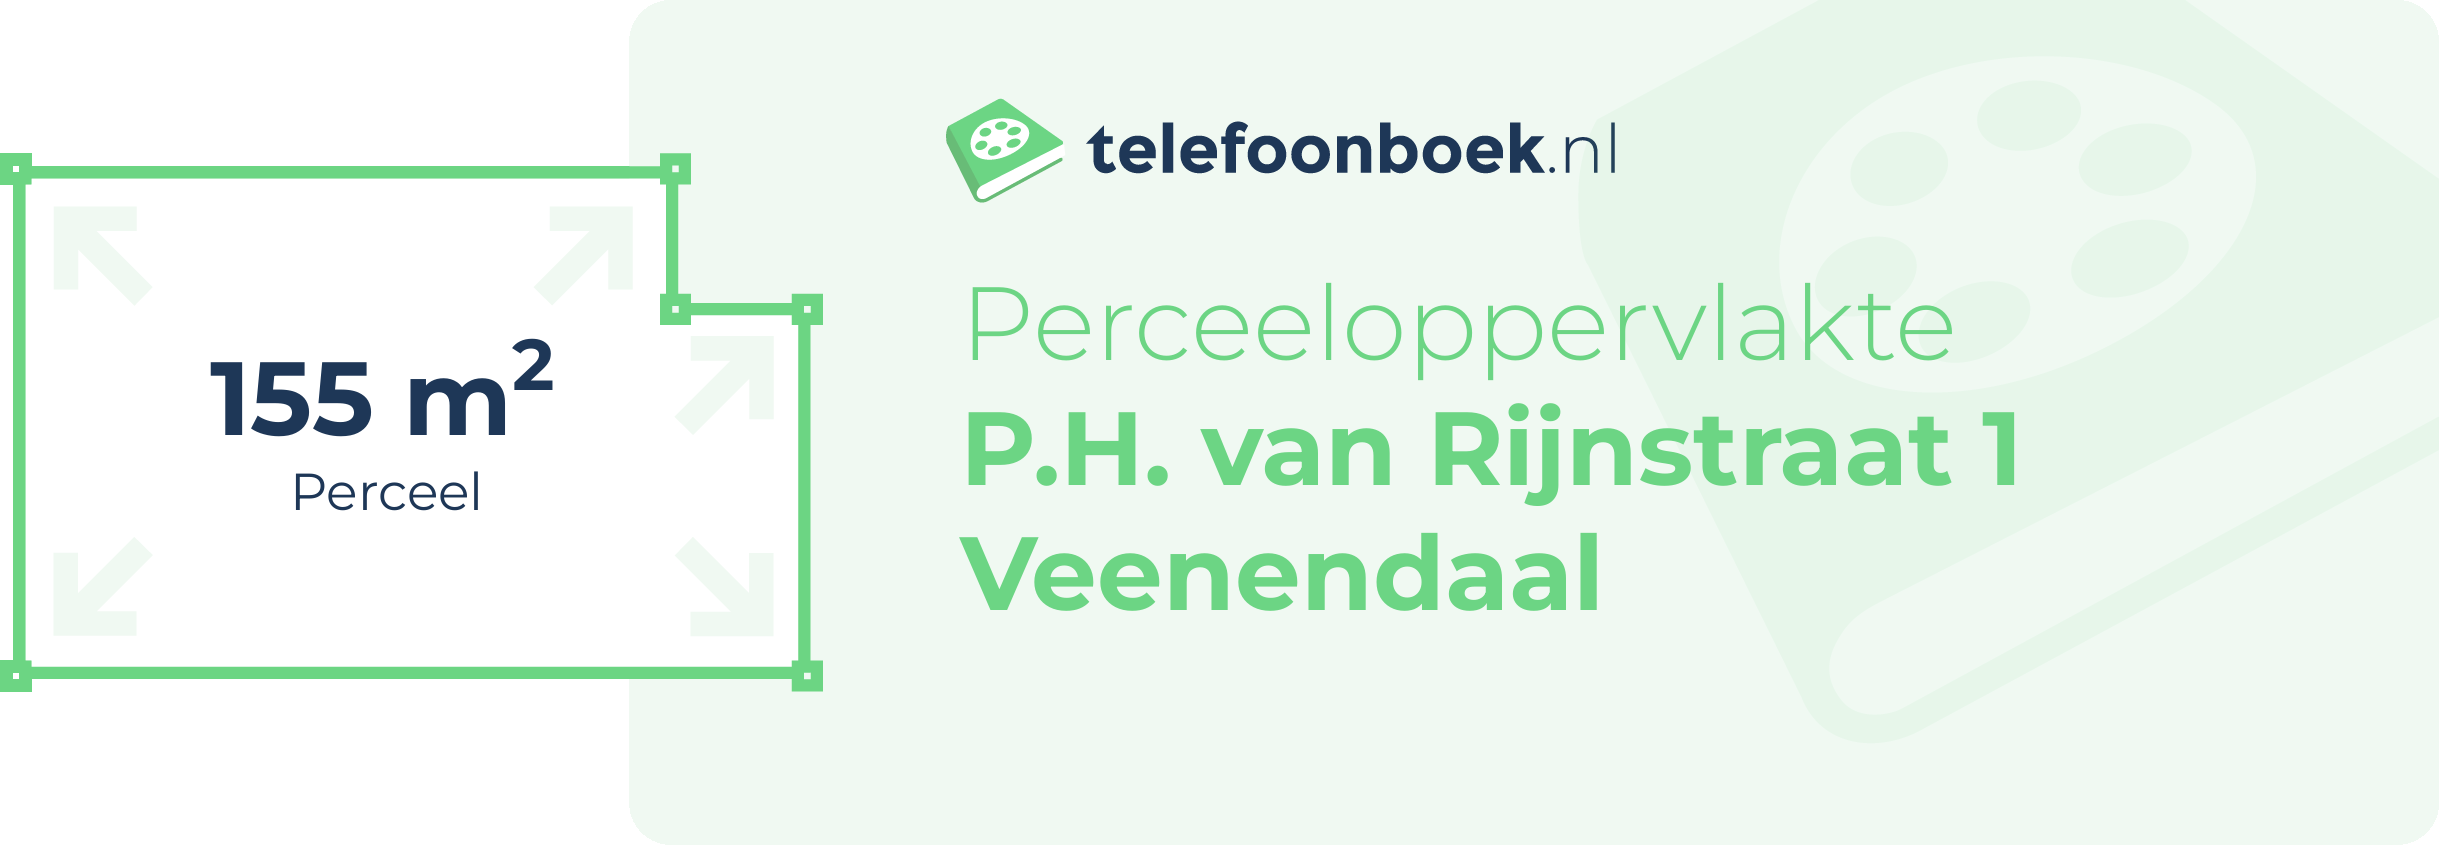 Perceeloppervlakte P.H. Van Rijnstraat 1 Veenendaal